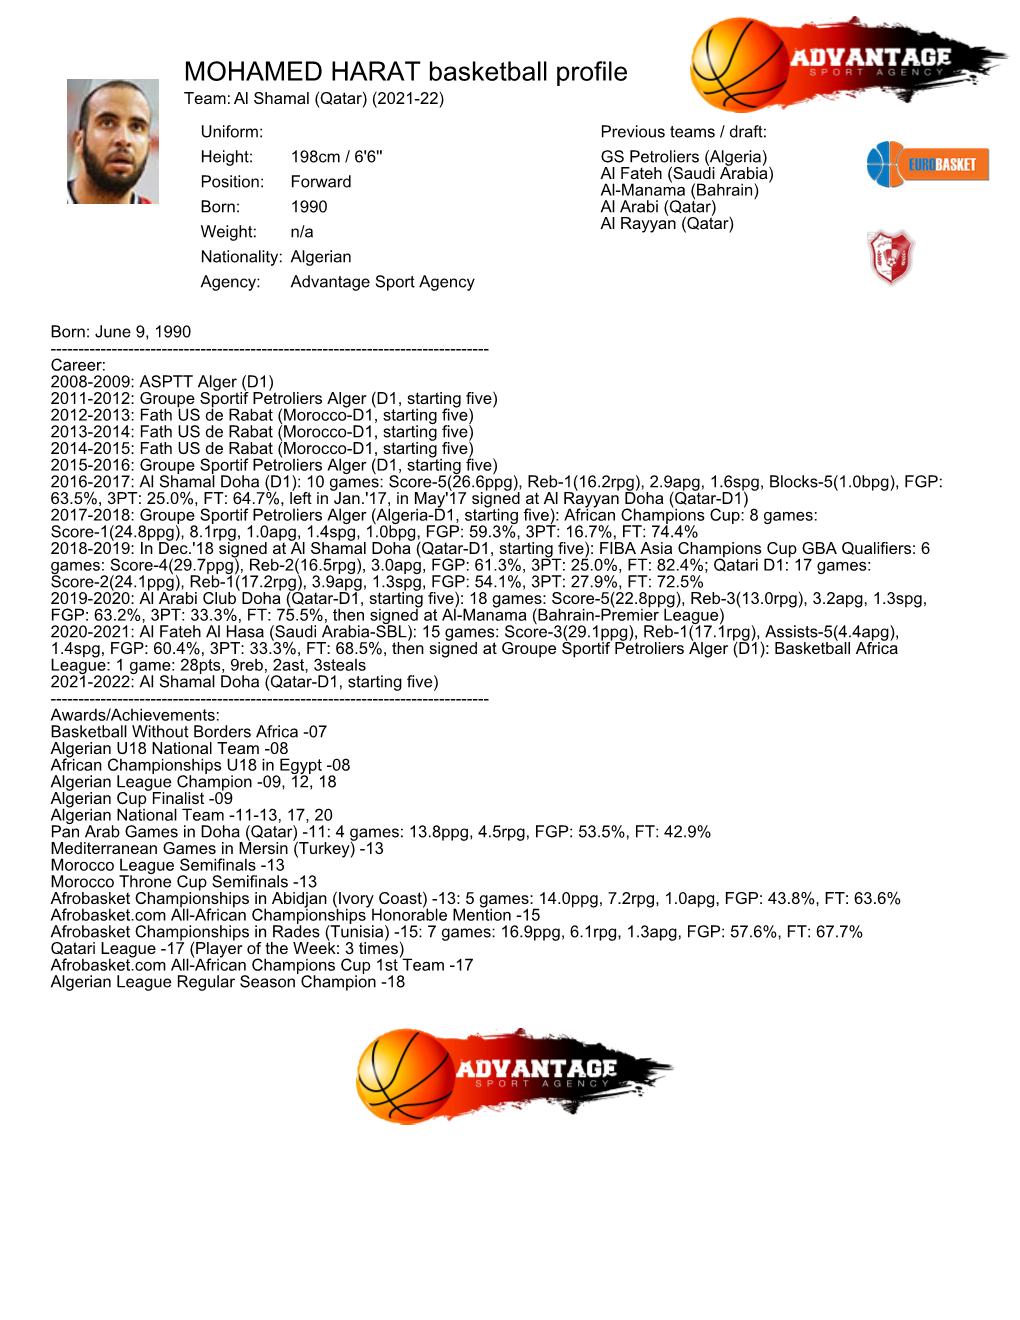 MOHAMED HARAT Basketball Profile